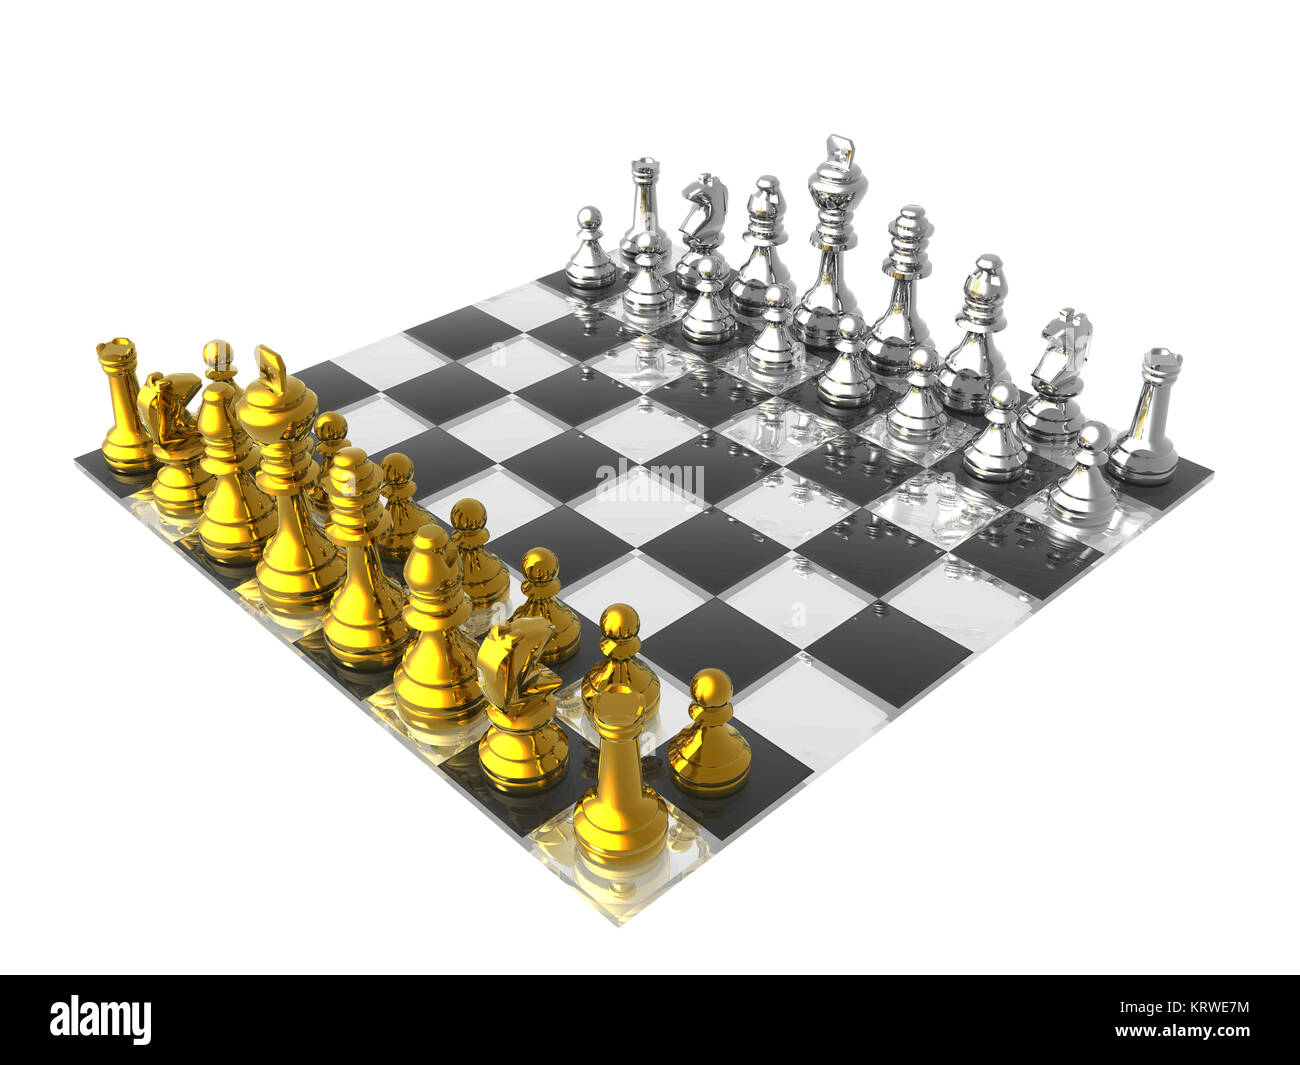 Página 68  Chess Imagens – Download Grátis no Freepik